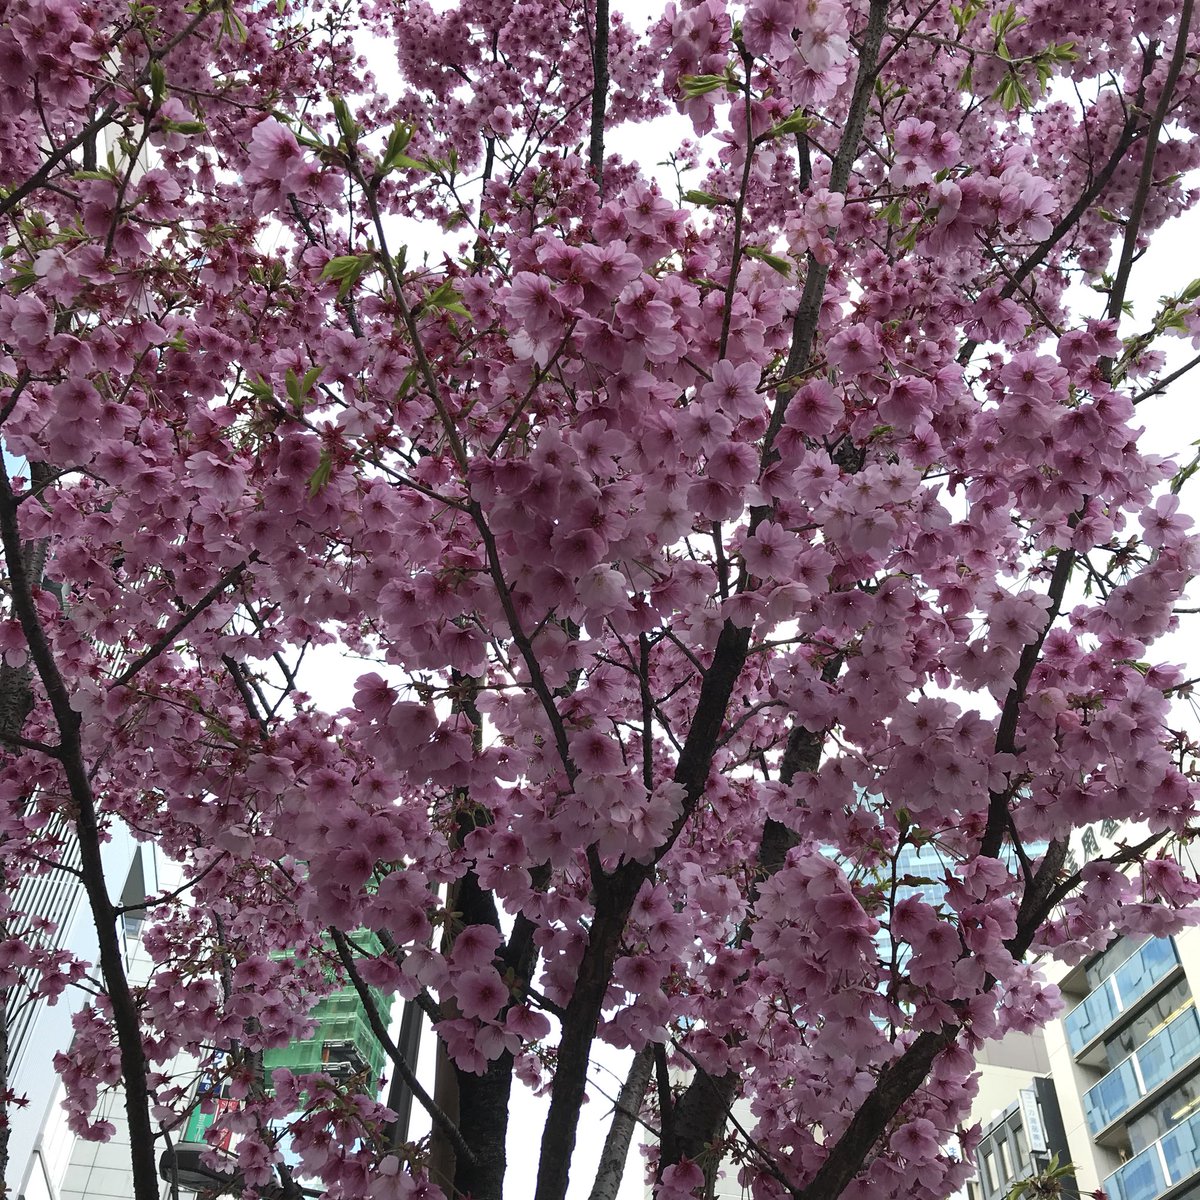 Ichiro Mizuki おはゼーット ひときわ目立つ濃いピンク色の桜 カワヅザクラかと思いきや咲く時期が遅いので種類は分からけどインスタ映えする桜だz 今日も良い一日を Have A Good Weekend Pura Vida Z 桜 濃いピンク色の桜 水木一郎 T Co